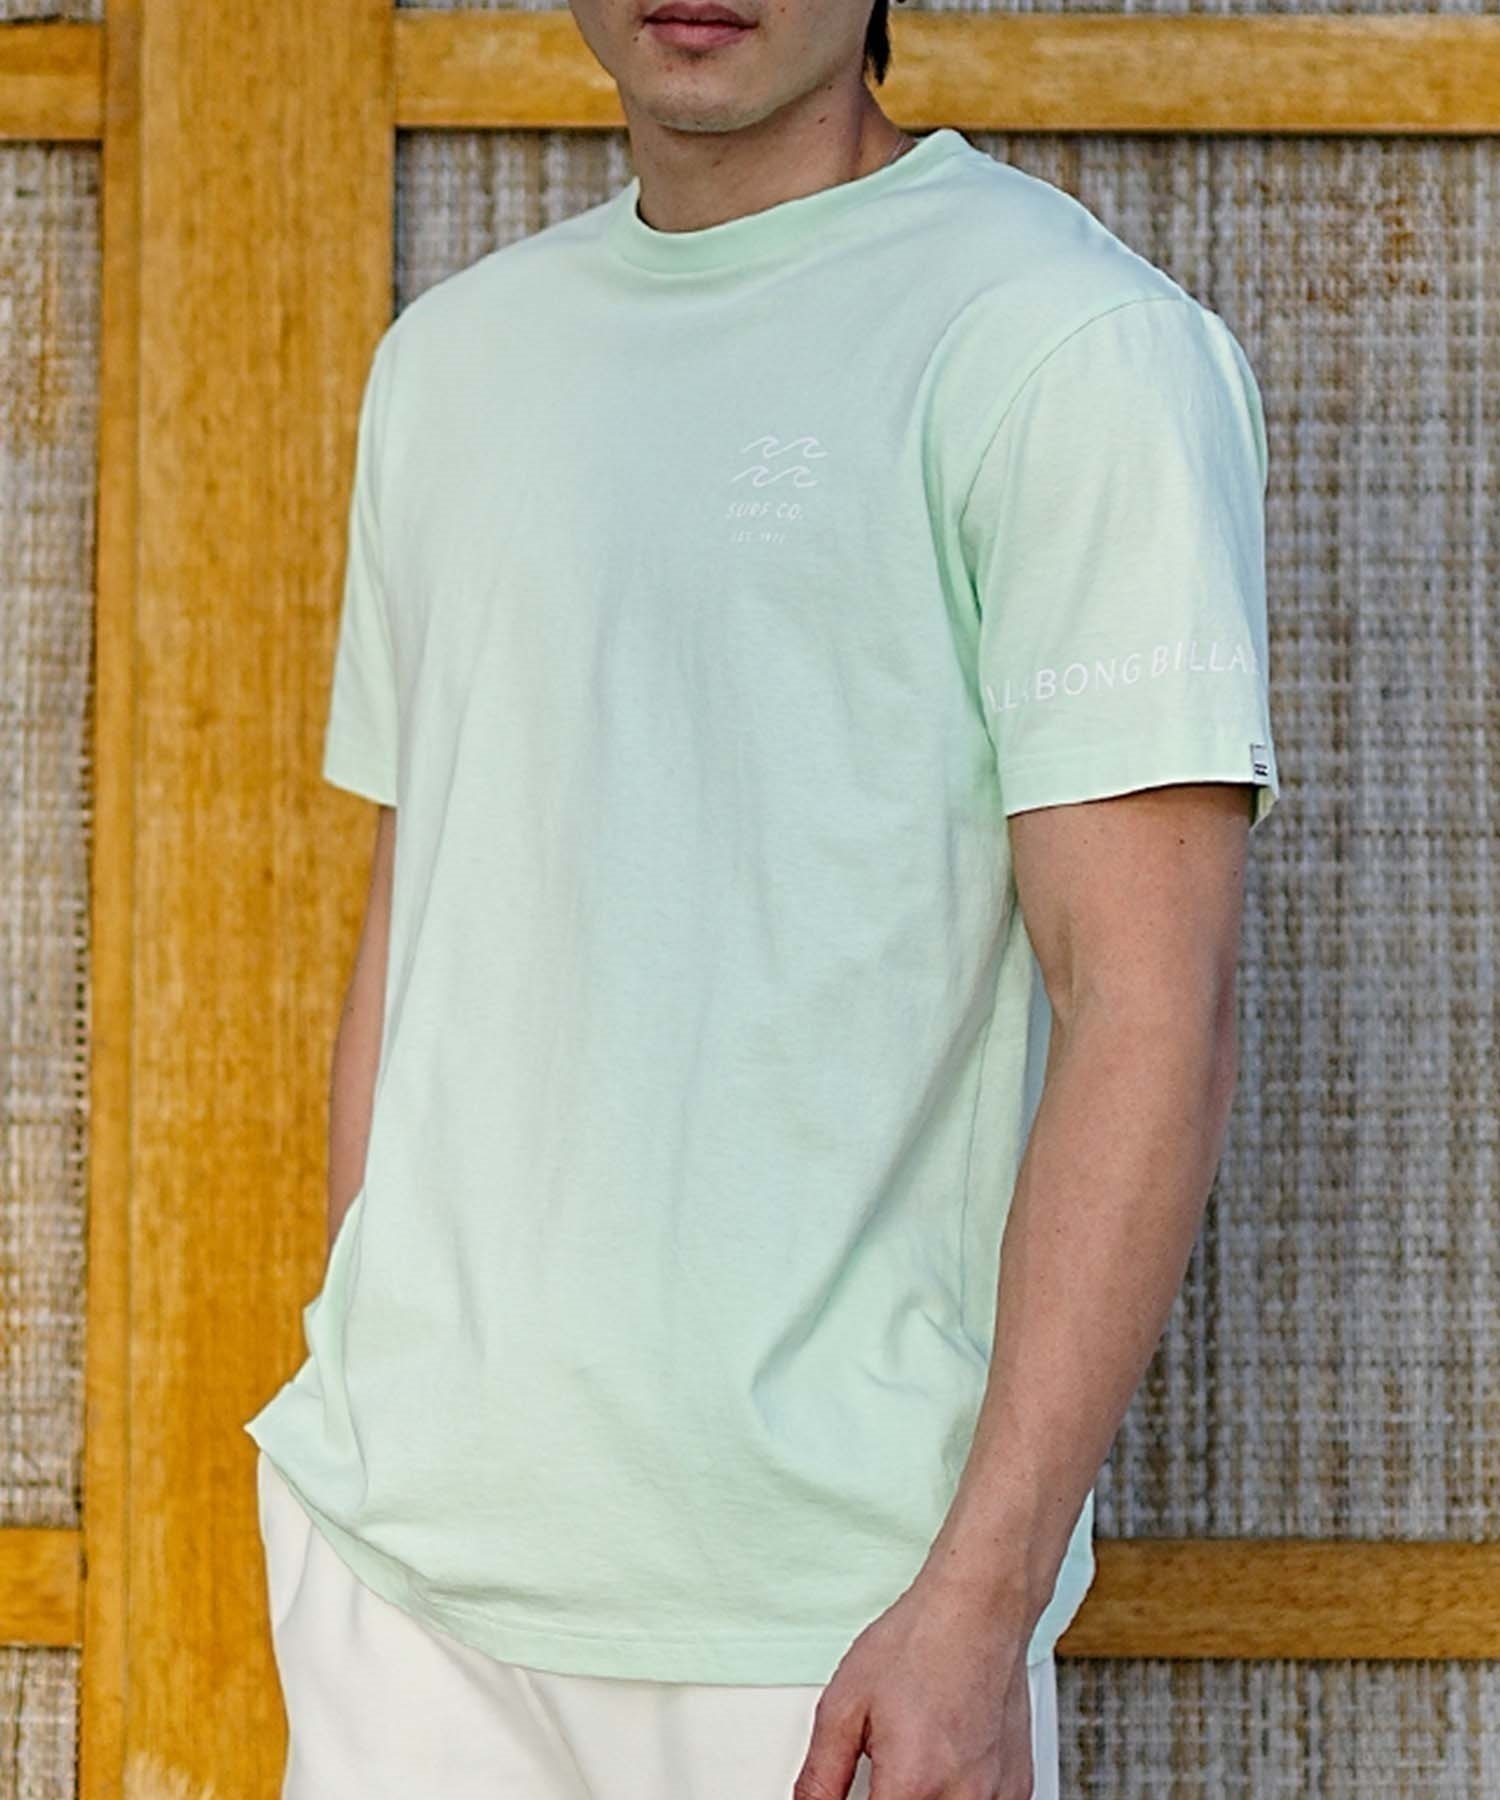 【クーポン対象】BILLABONG ビラボン メンズ バックプリントTシャツ ロゴT 半袖 BE011-204(MNT-S)